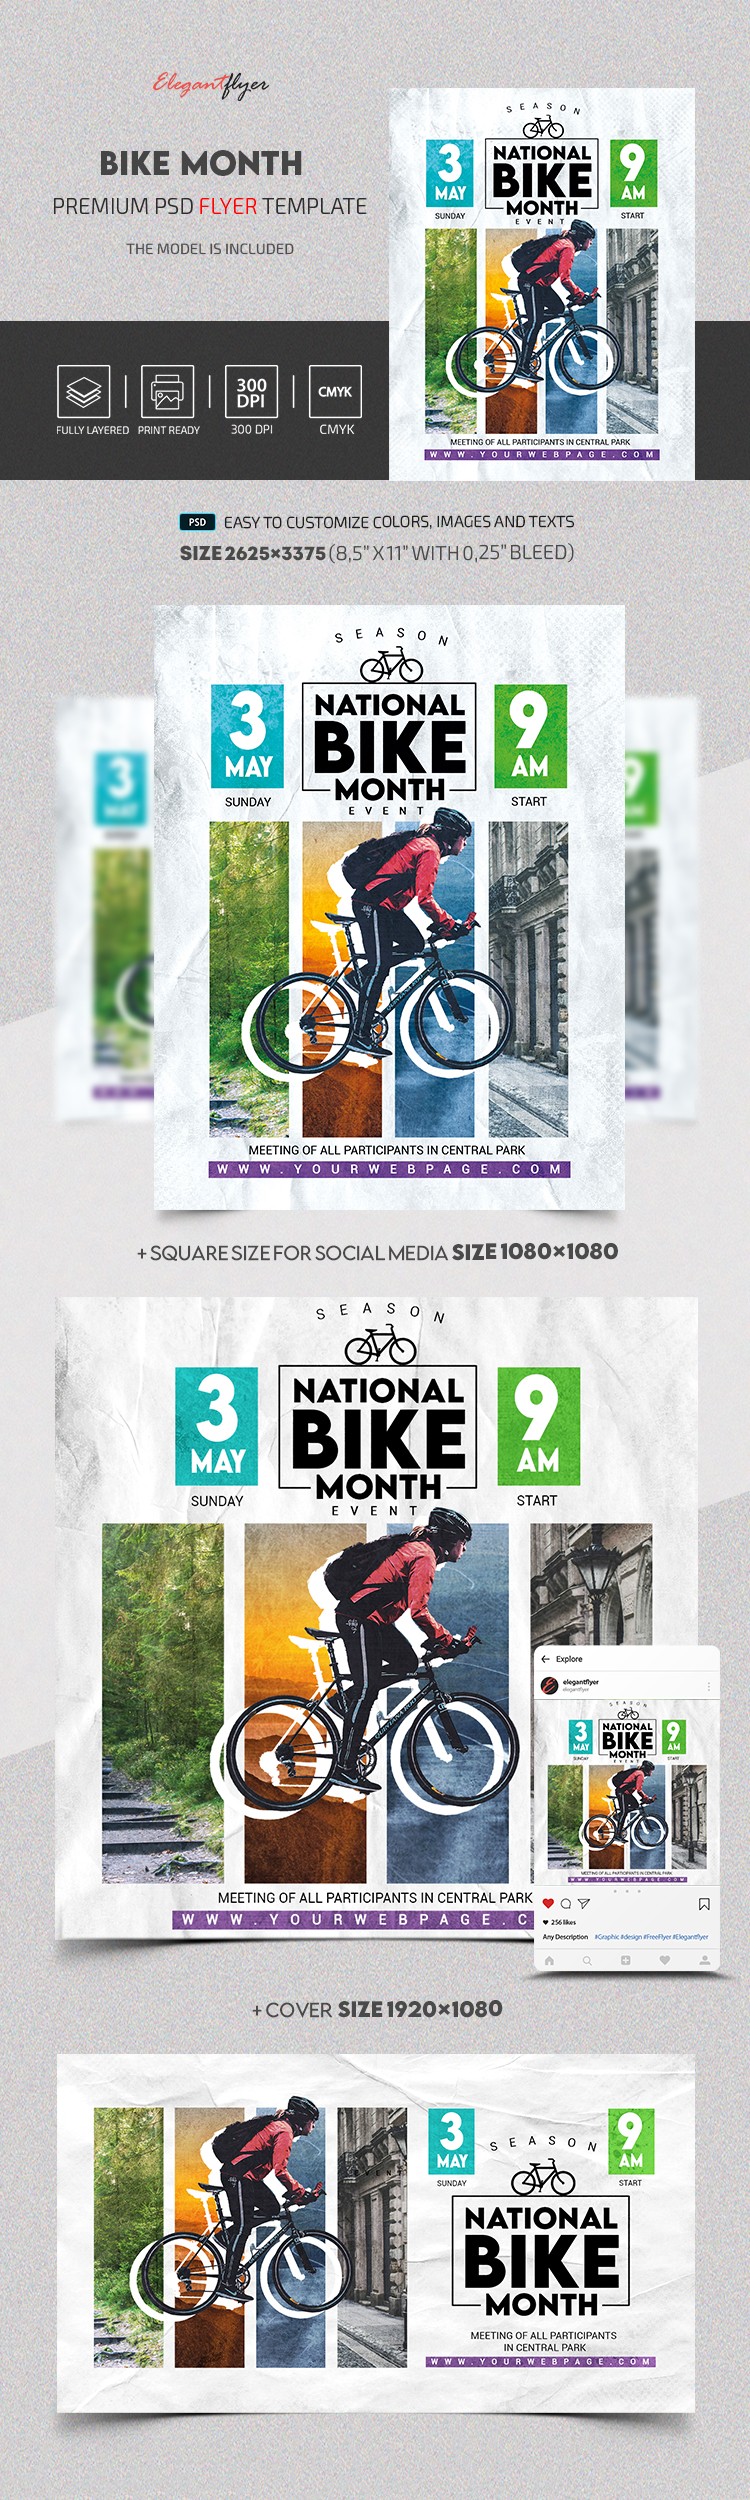 Nationaler Fahrradmonat-Veranstaltung by ElegantFlyer